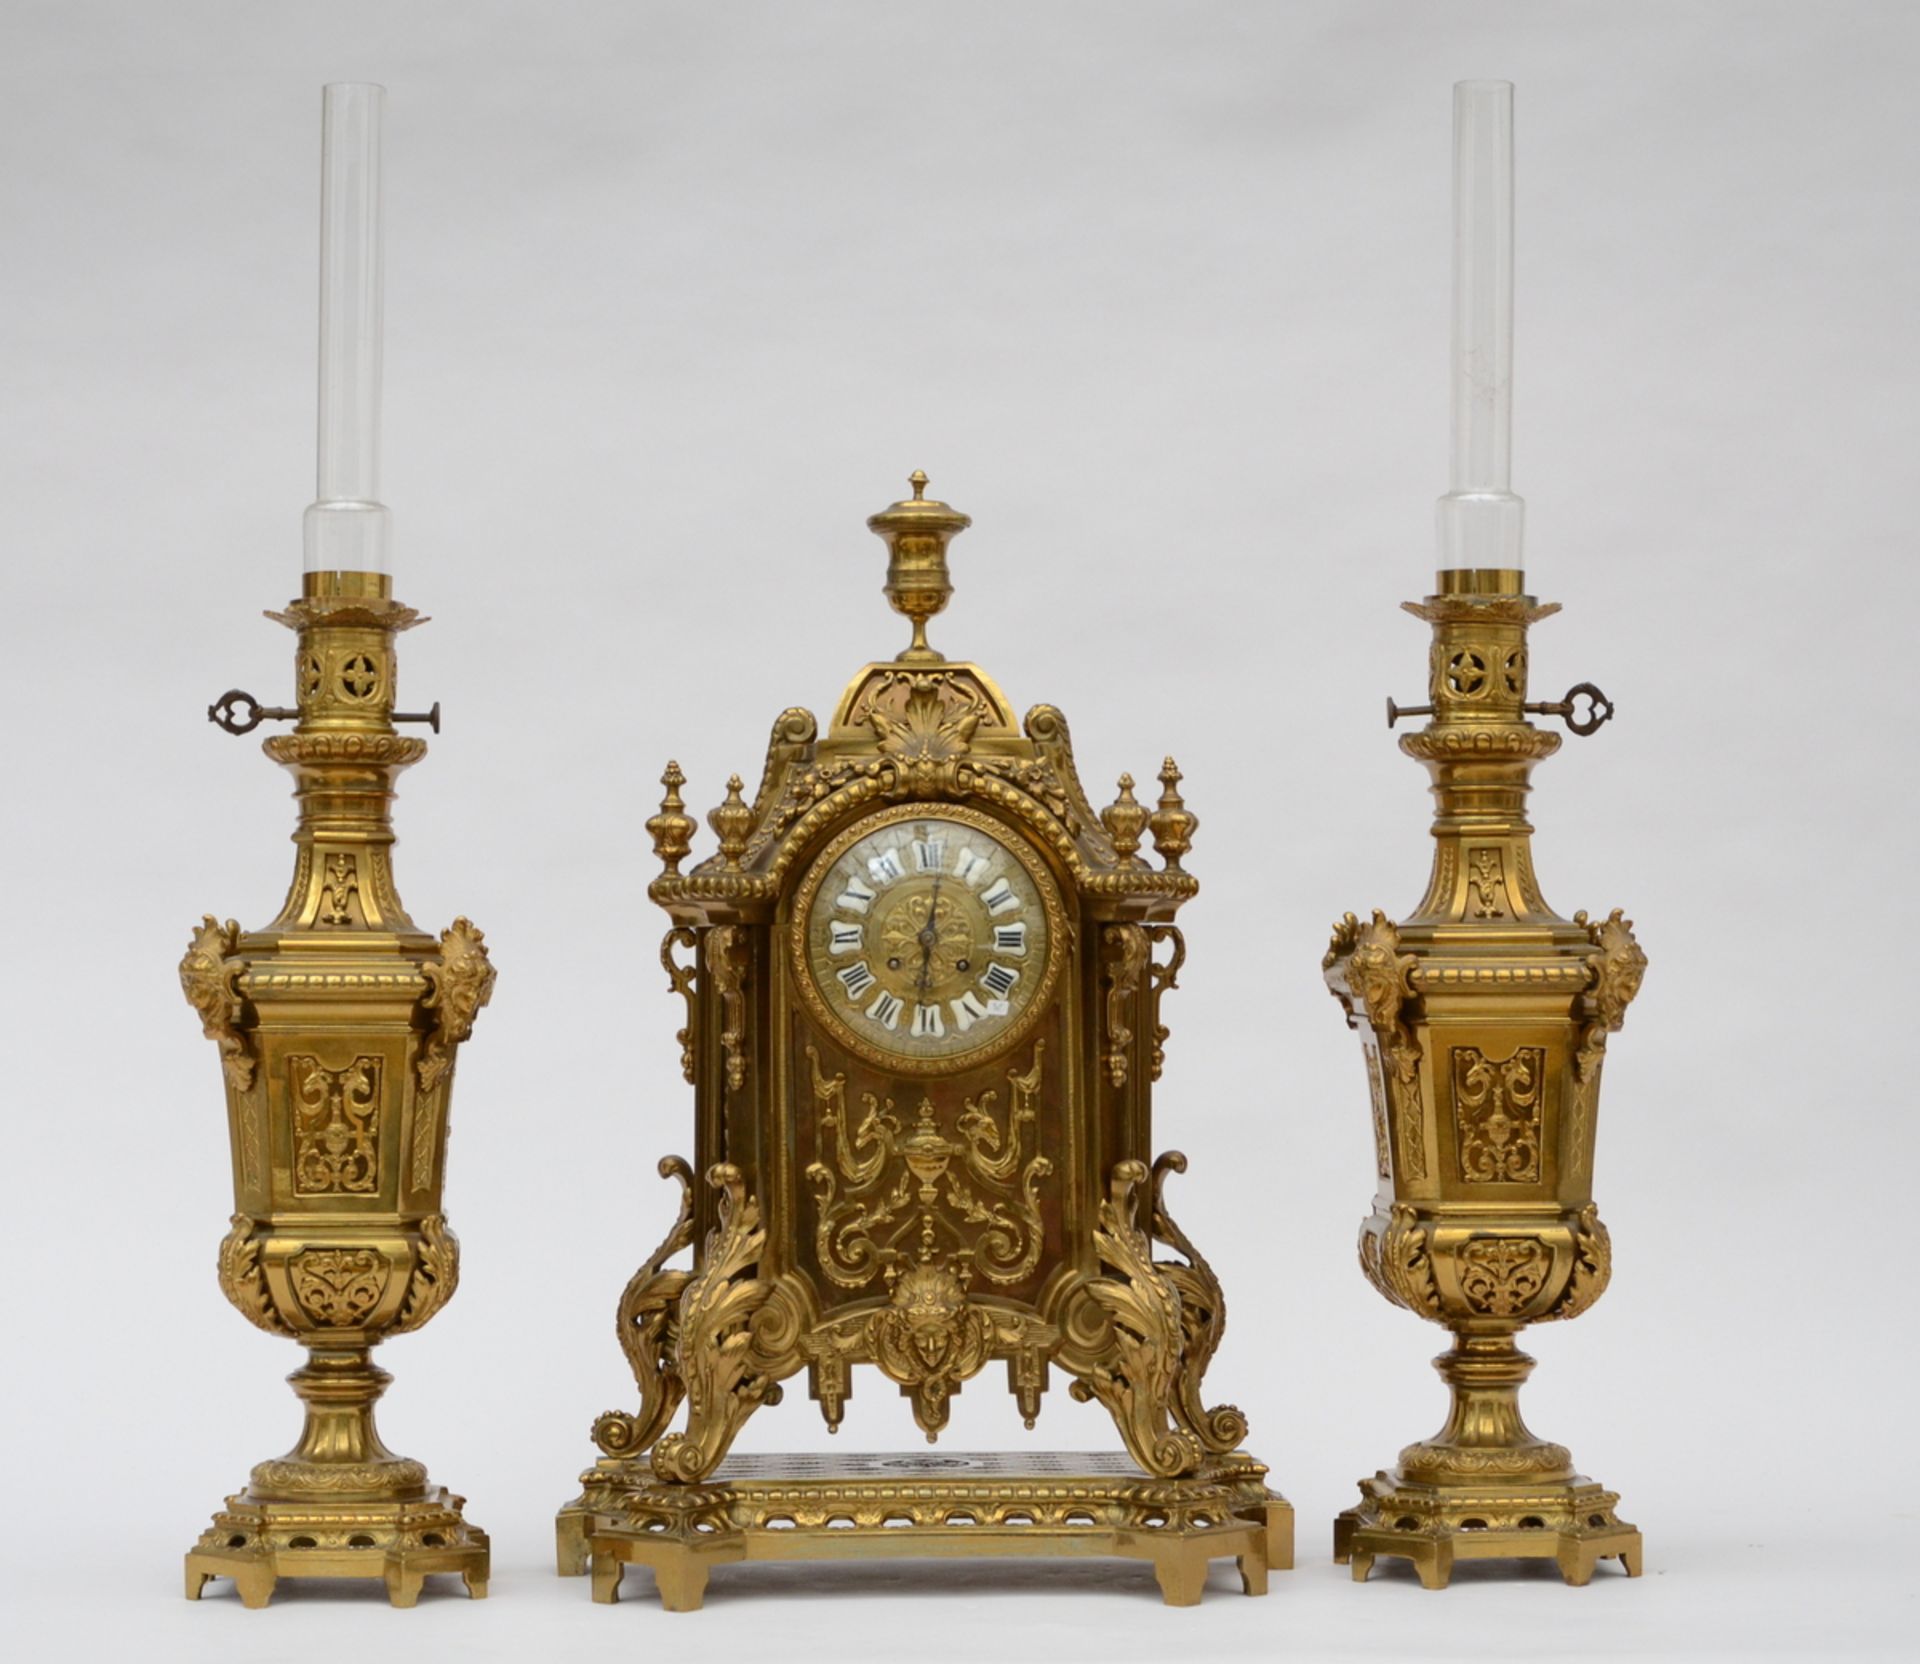 A bronze clock set in Henri II style